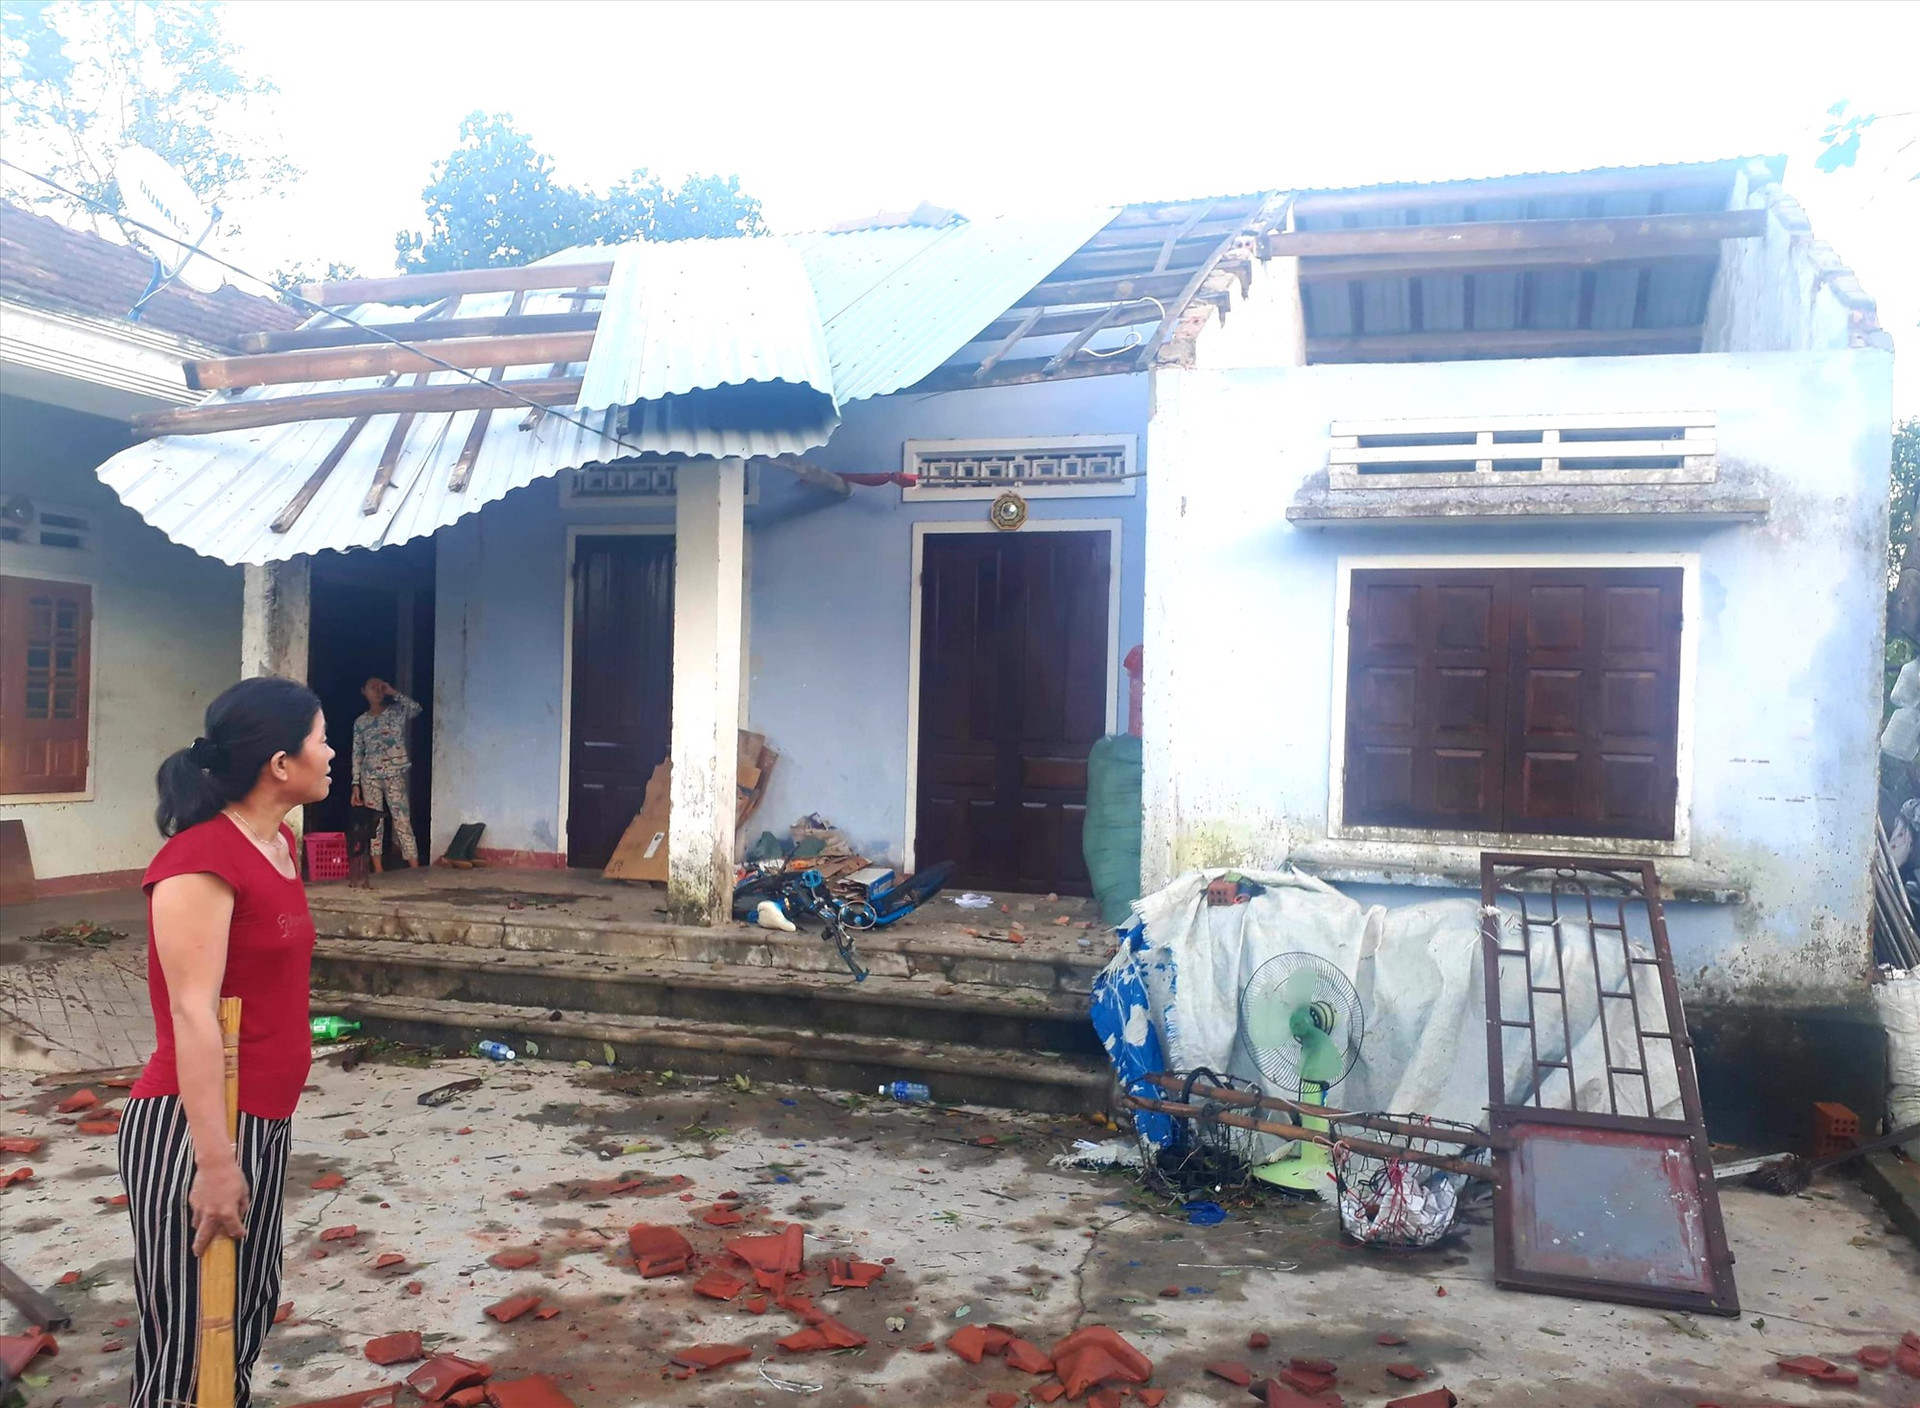 Bão làm hư hỏng, tốc mái nhiều nhà dân ở Quế Sơn. Ảnh: S.T